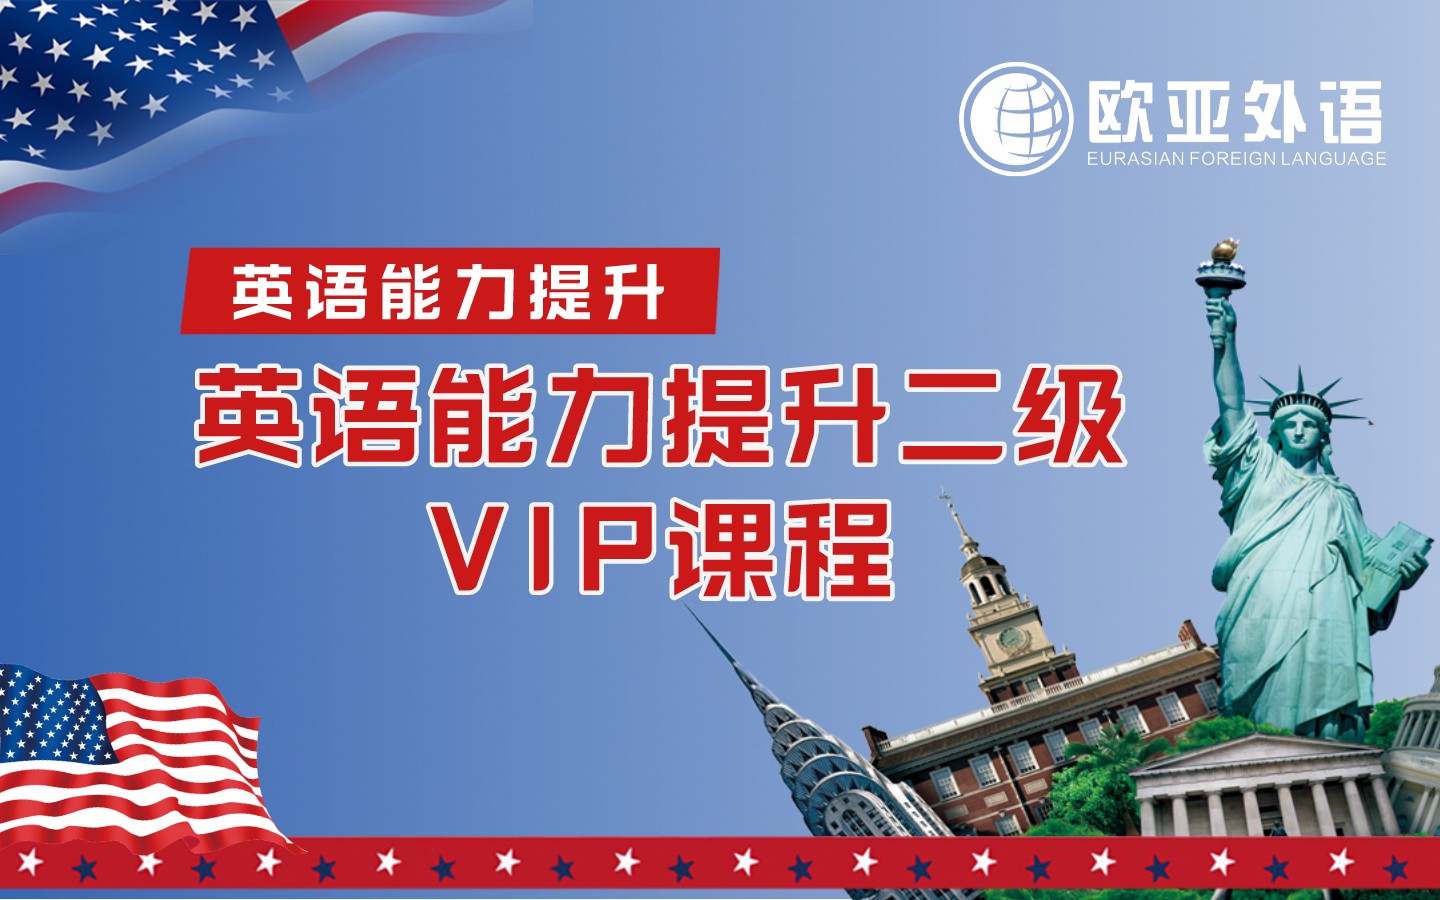 【武汉欧亚外语】英语能力提升二级VIP课程